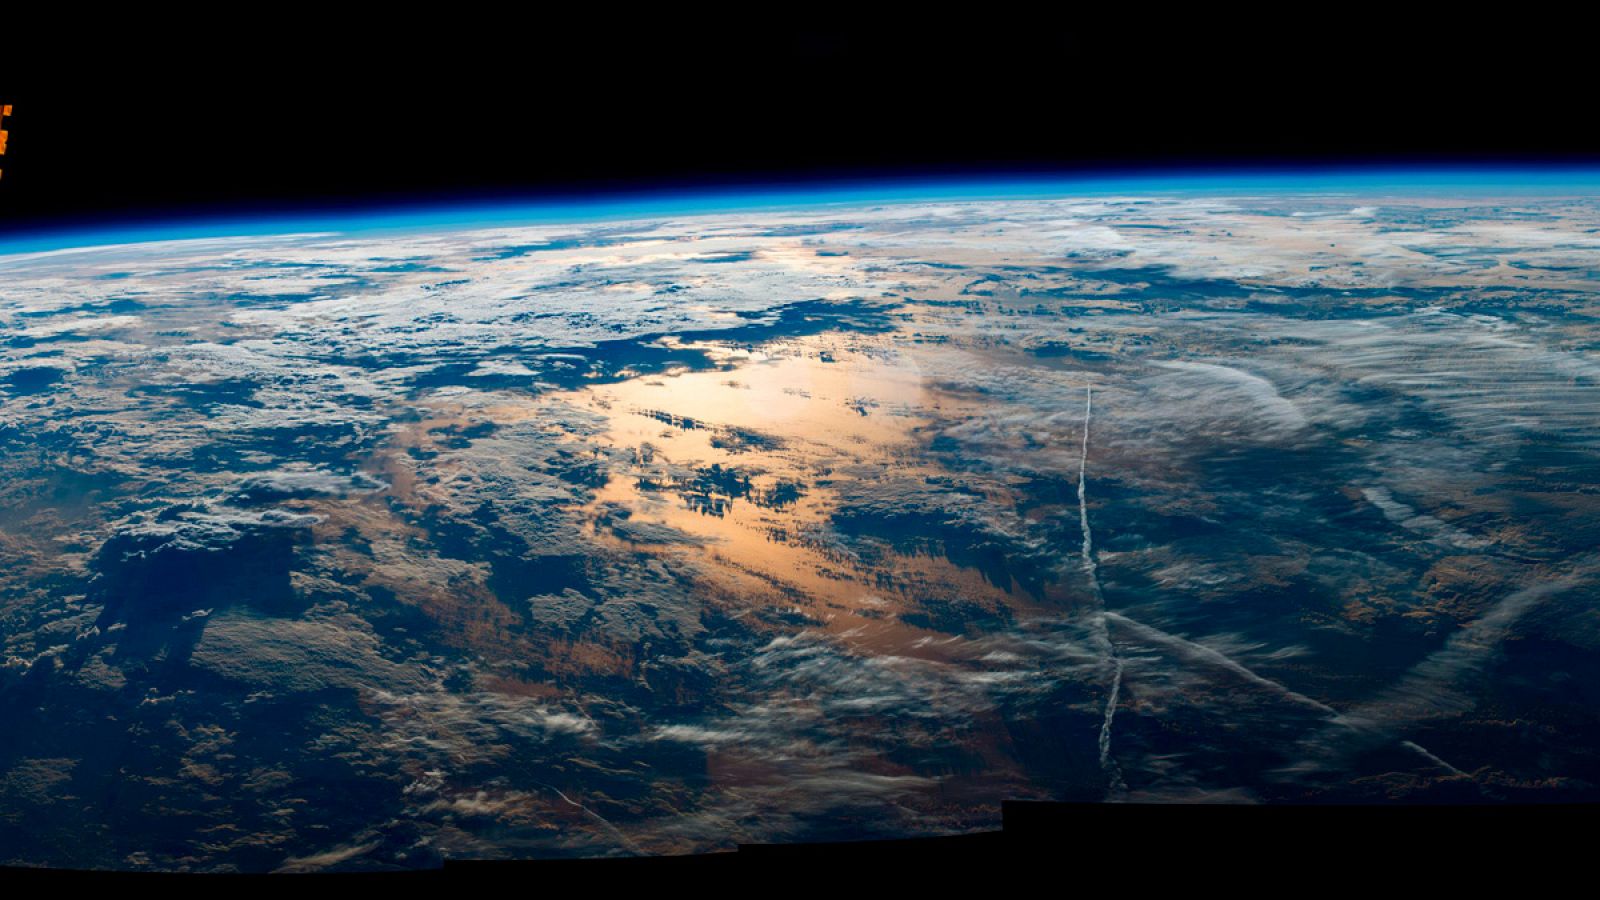 El amanecer sobre la Tierra, en una imagen tomada desde la Estación Espacial Internacional.